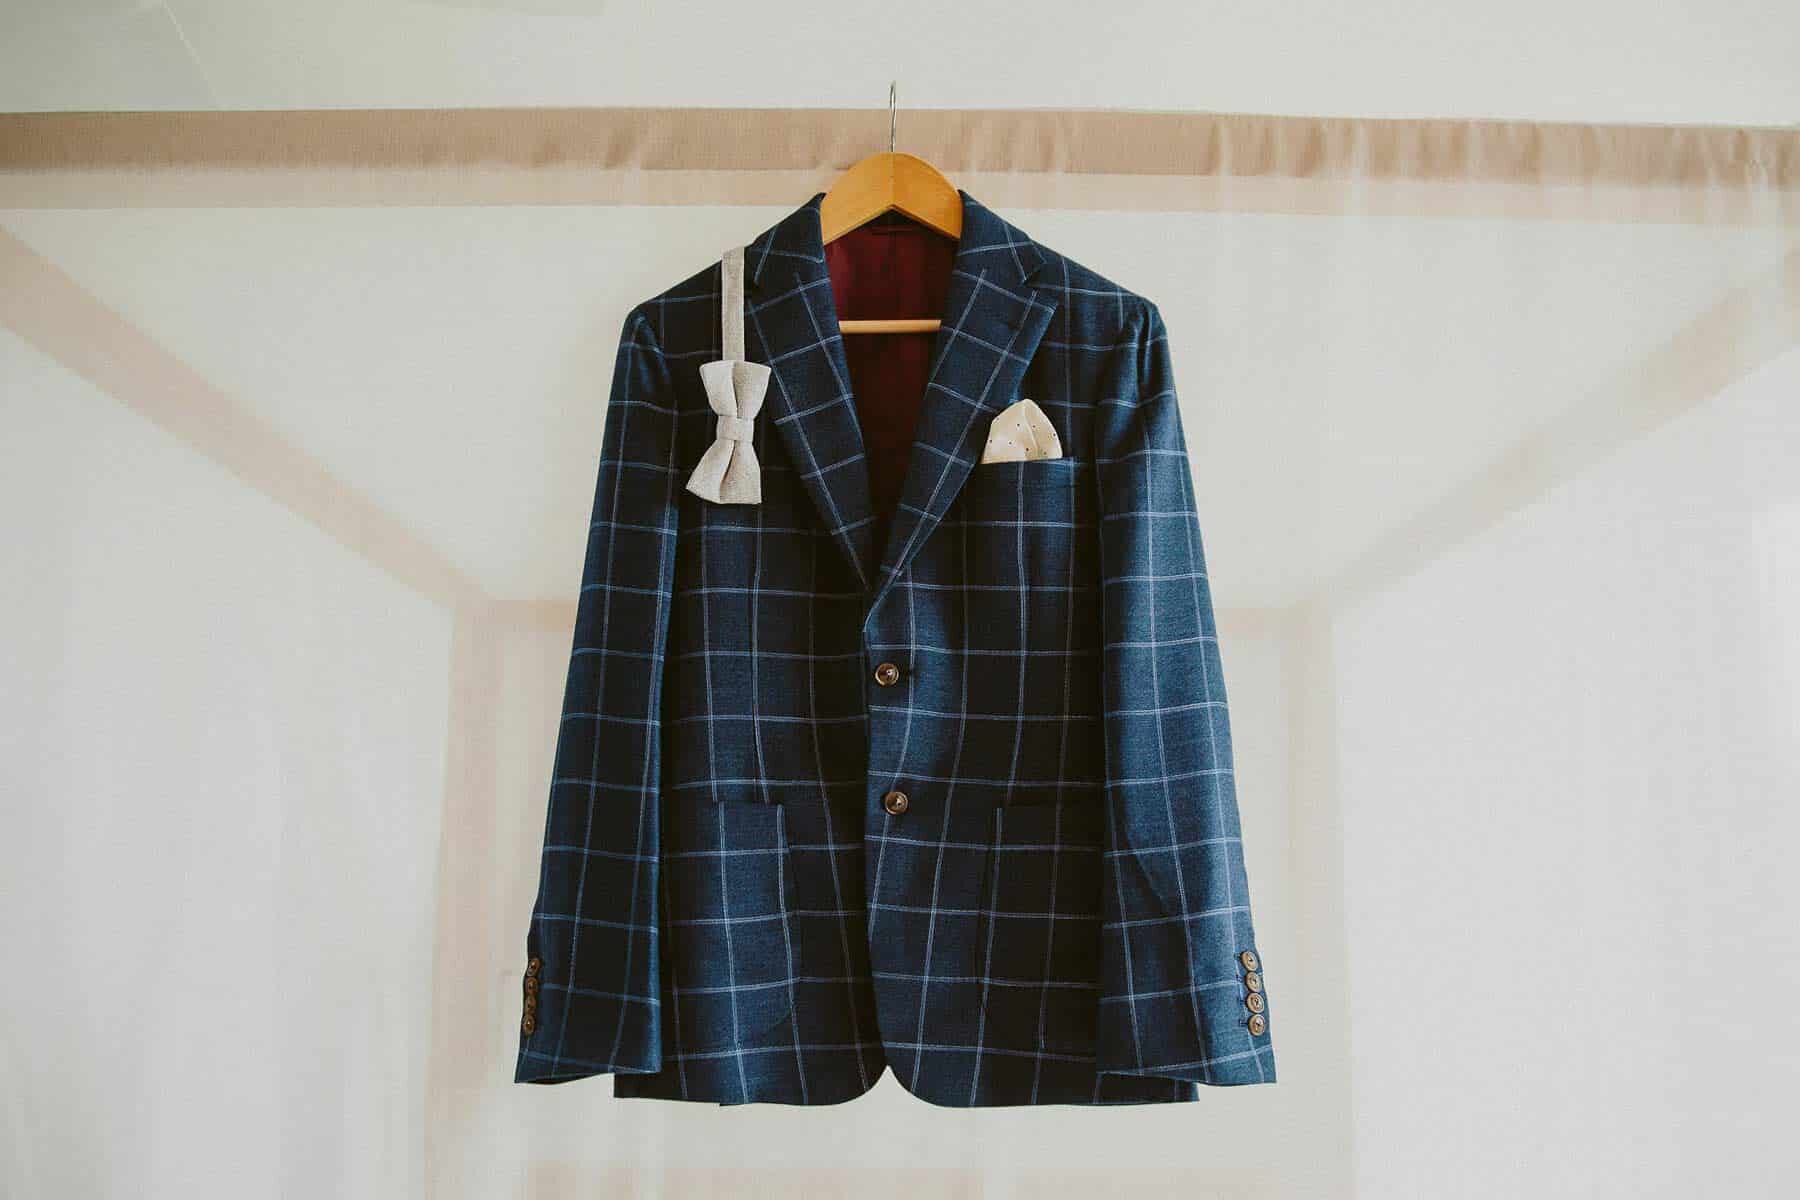 modern groom outfit - check blazer